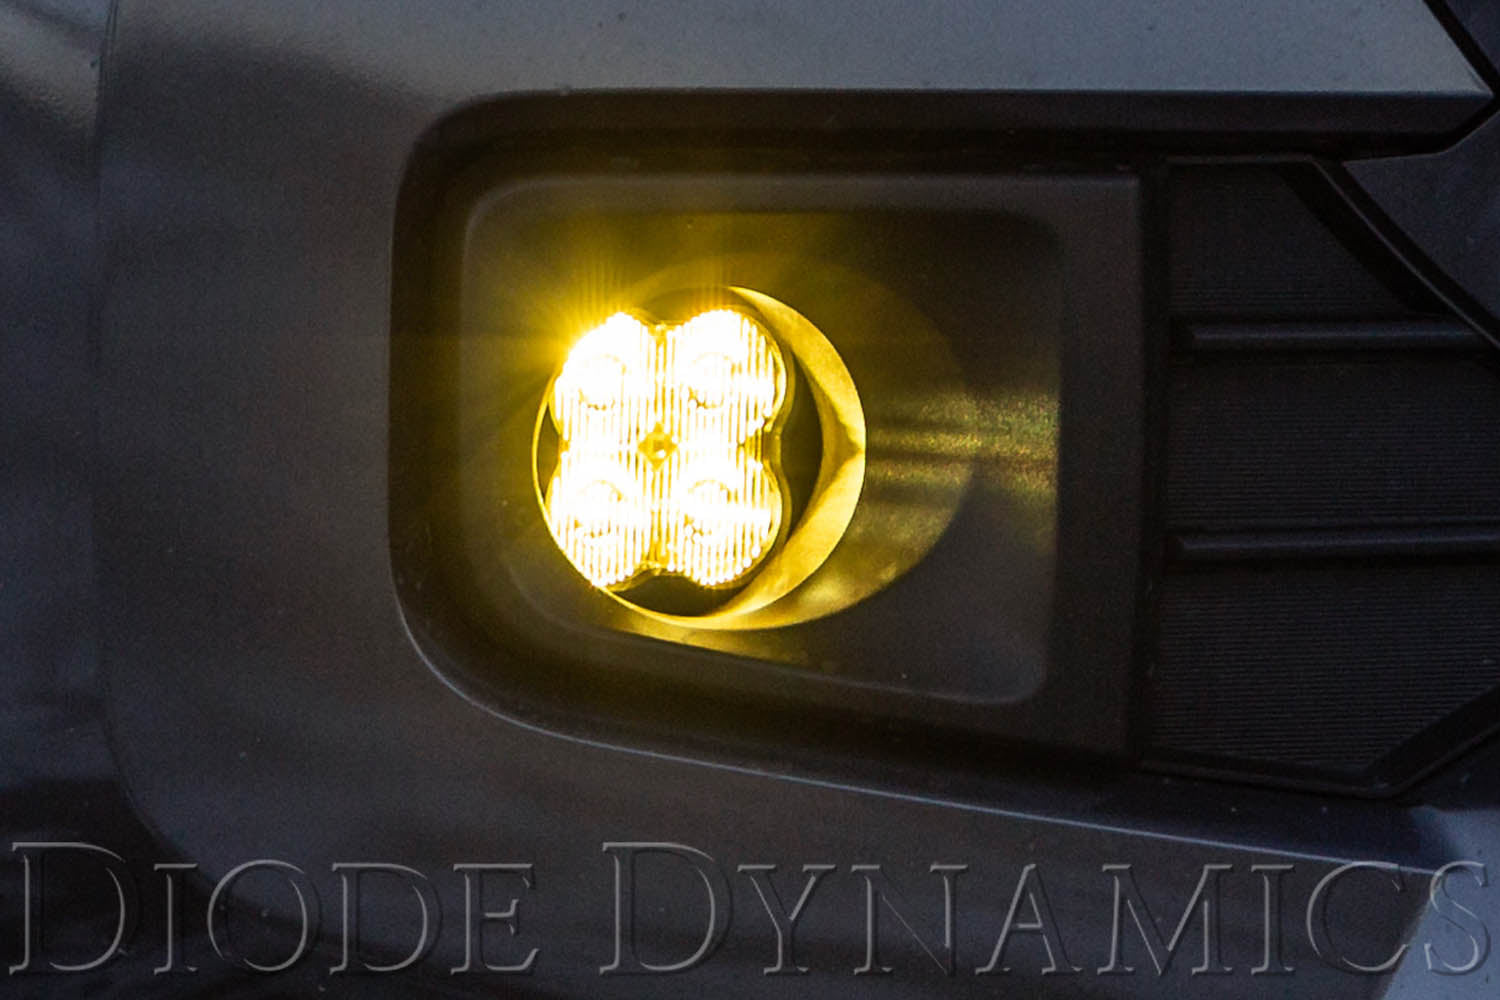 SS3 LED Fog Light Kit for 2008-2010 Toyota Highlander White SAE Fog Pro w/ Backlight Diode Dynamics